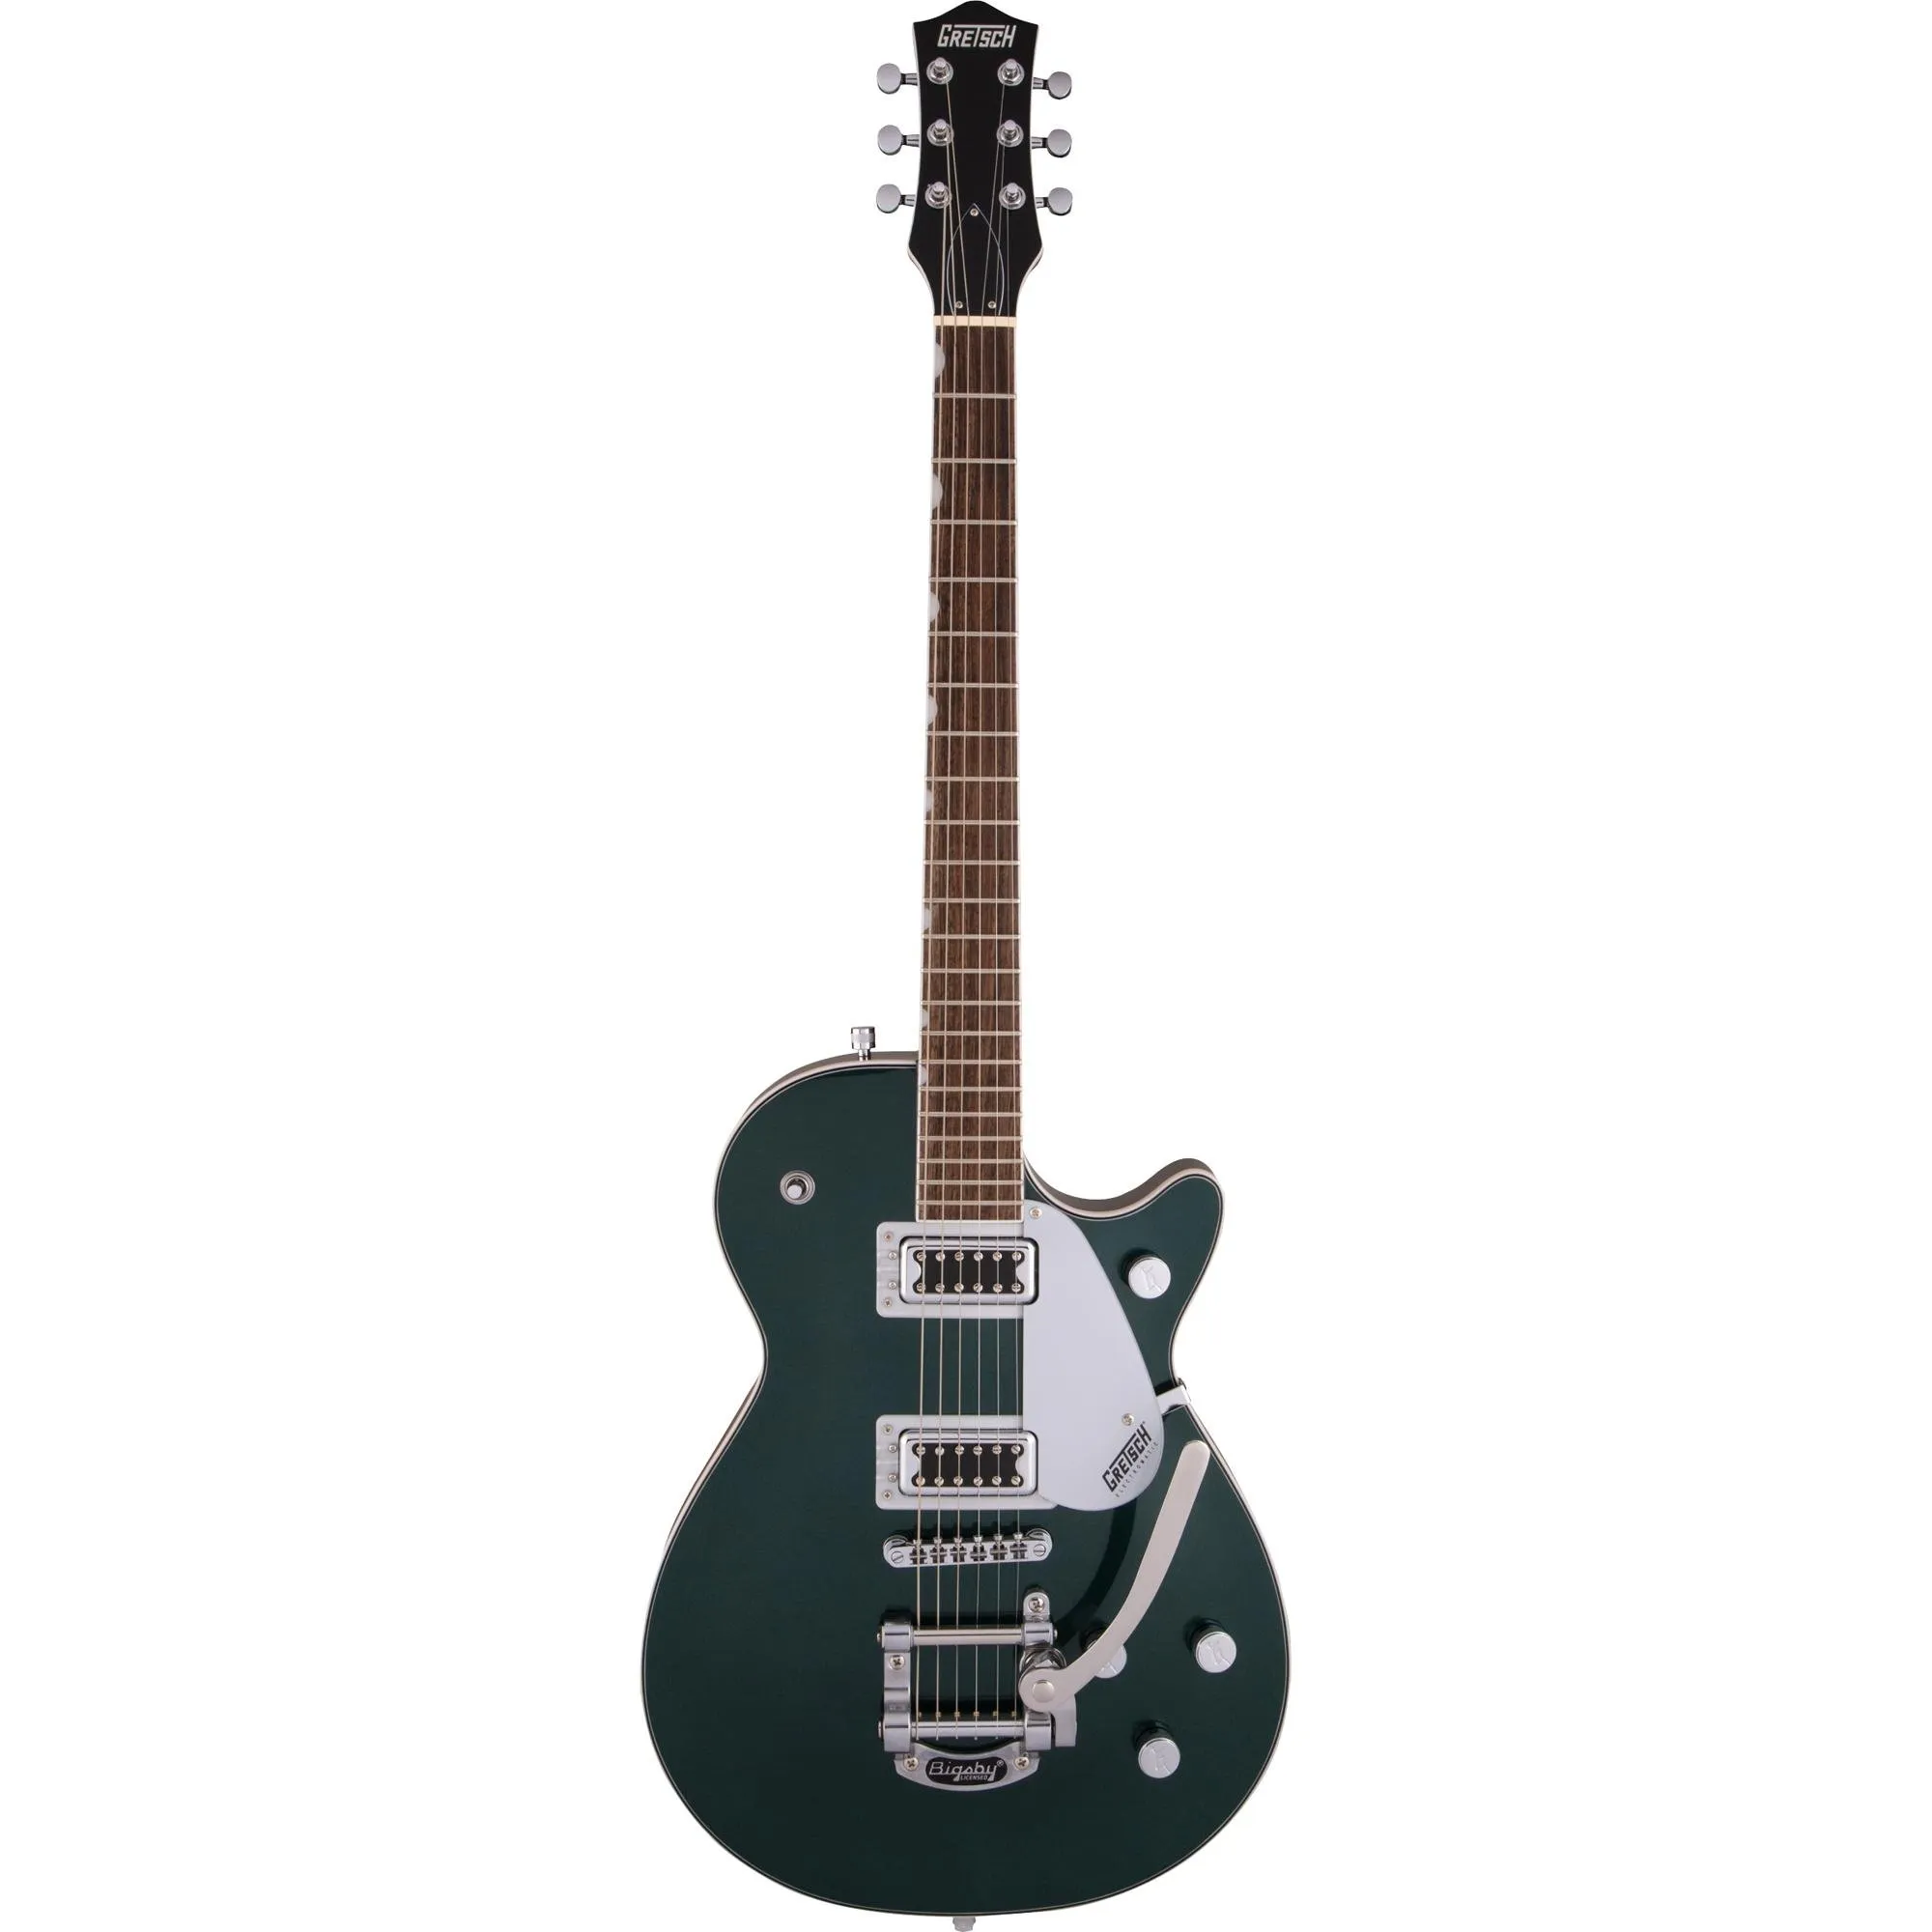 Guitarra Gretsch Electromatic G5230T FT Single-Cut Cadillac Green por 6.299,99 à vista no boleto/pix ou parcele em até 12x sem juros. Compre na loja Mundomax!